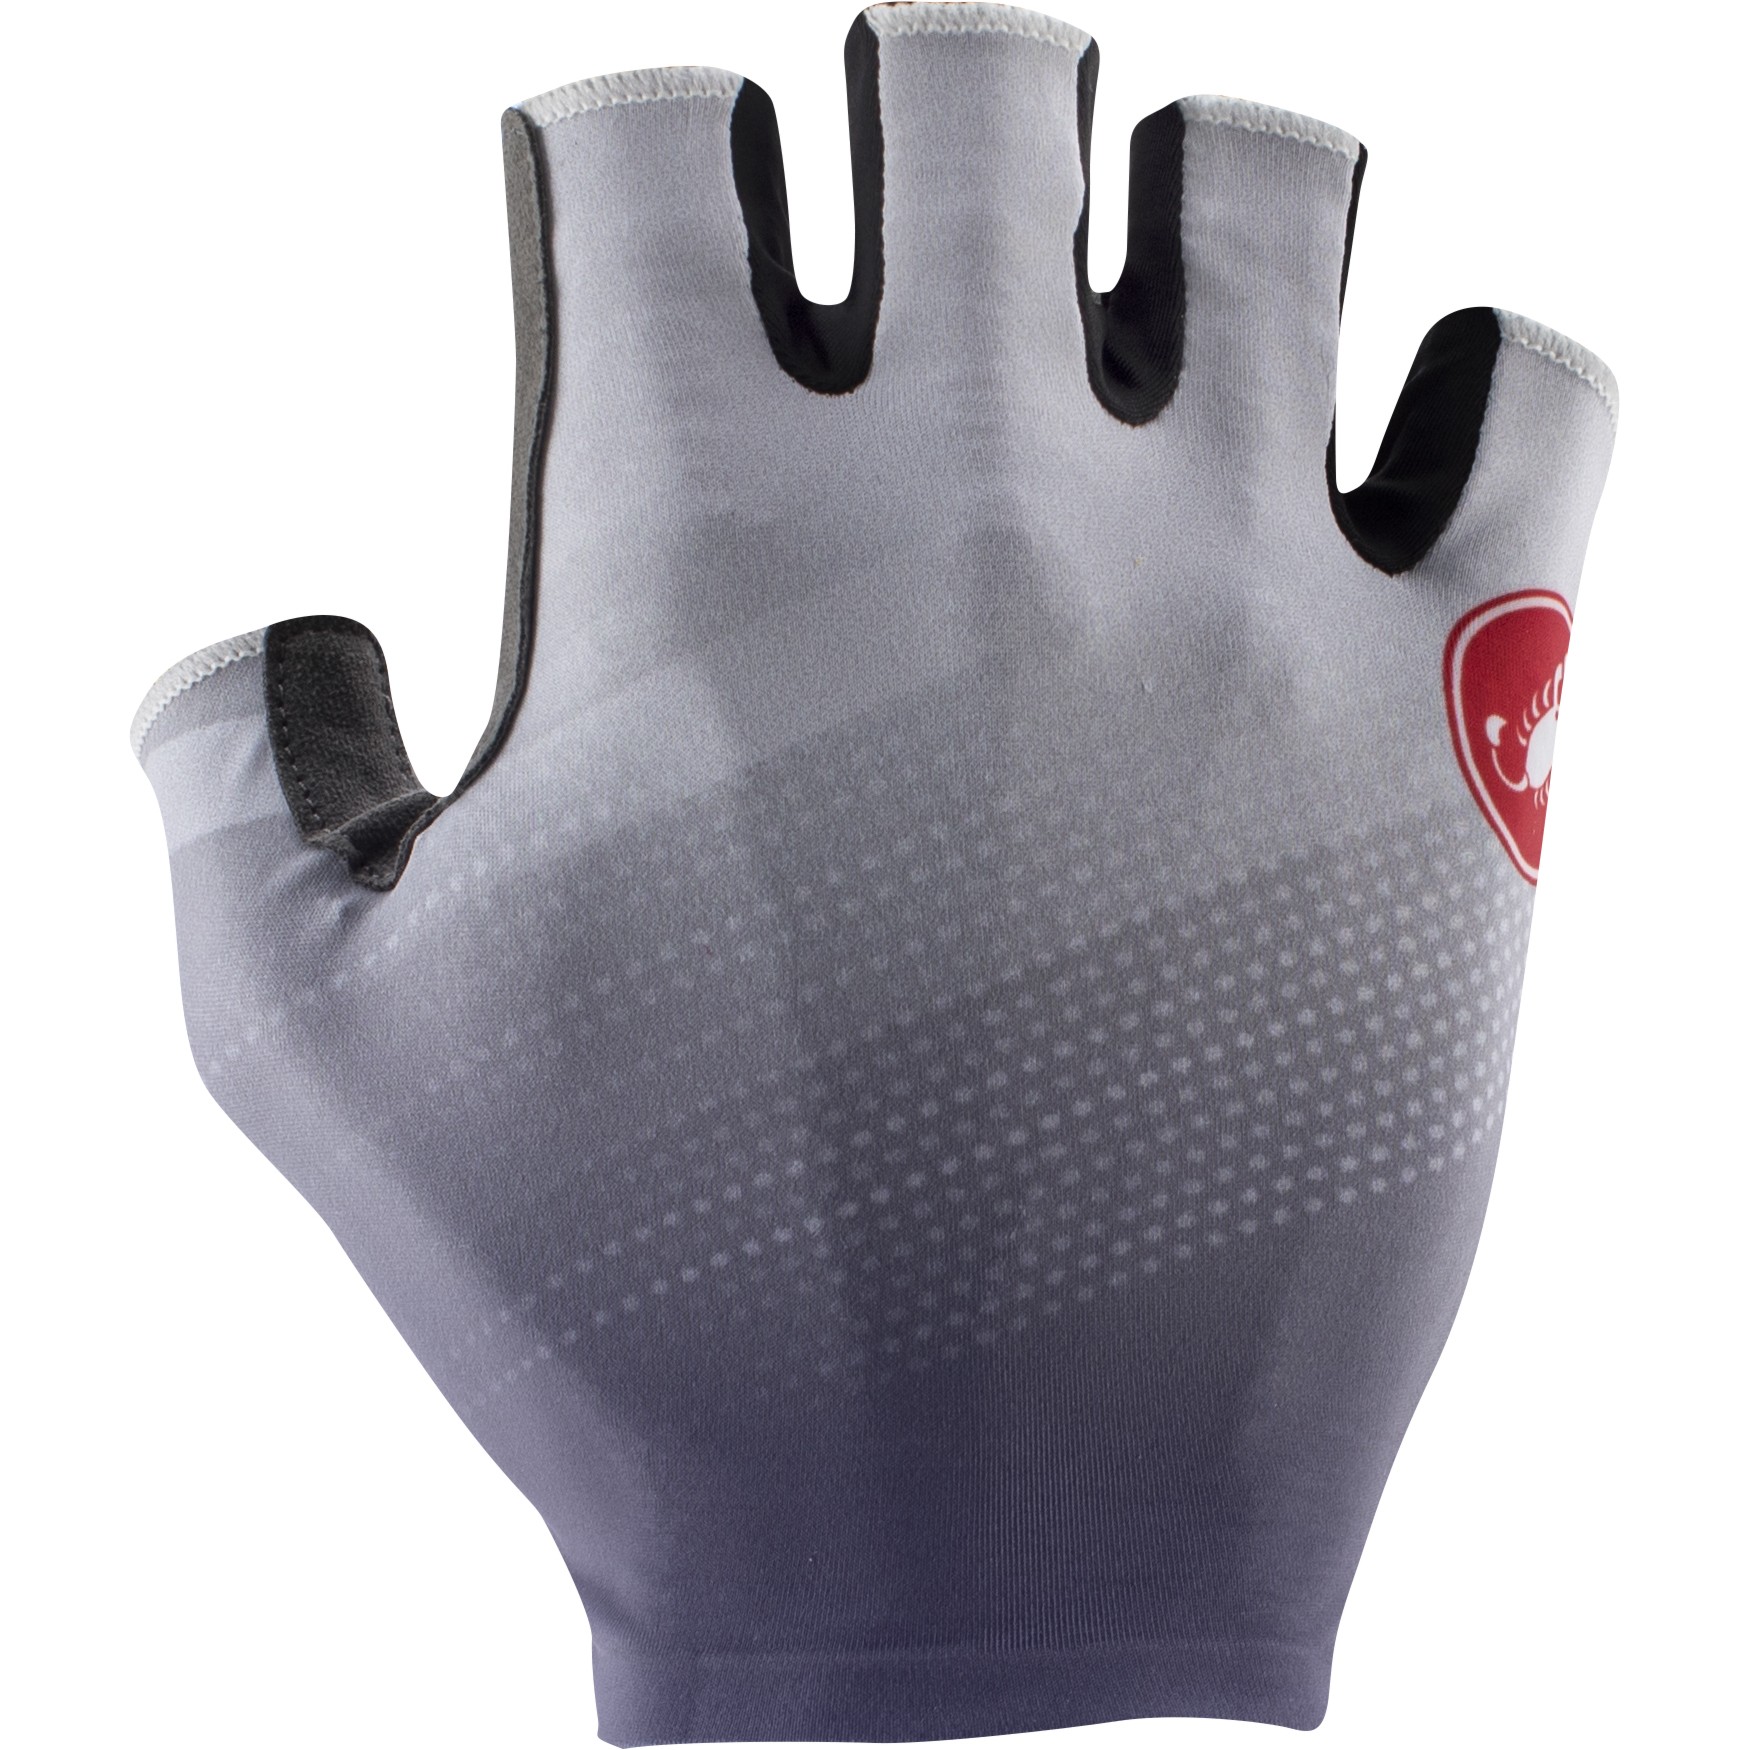 Produktbild von Castelli Competizione 2 Kurzfinger Handschuhe - silver grey/belgian blue 870